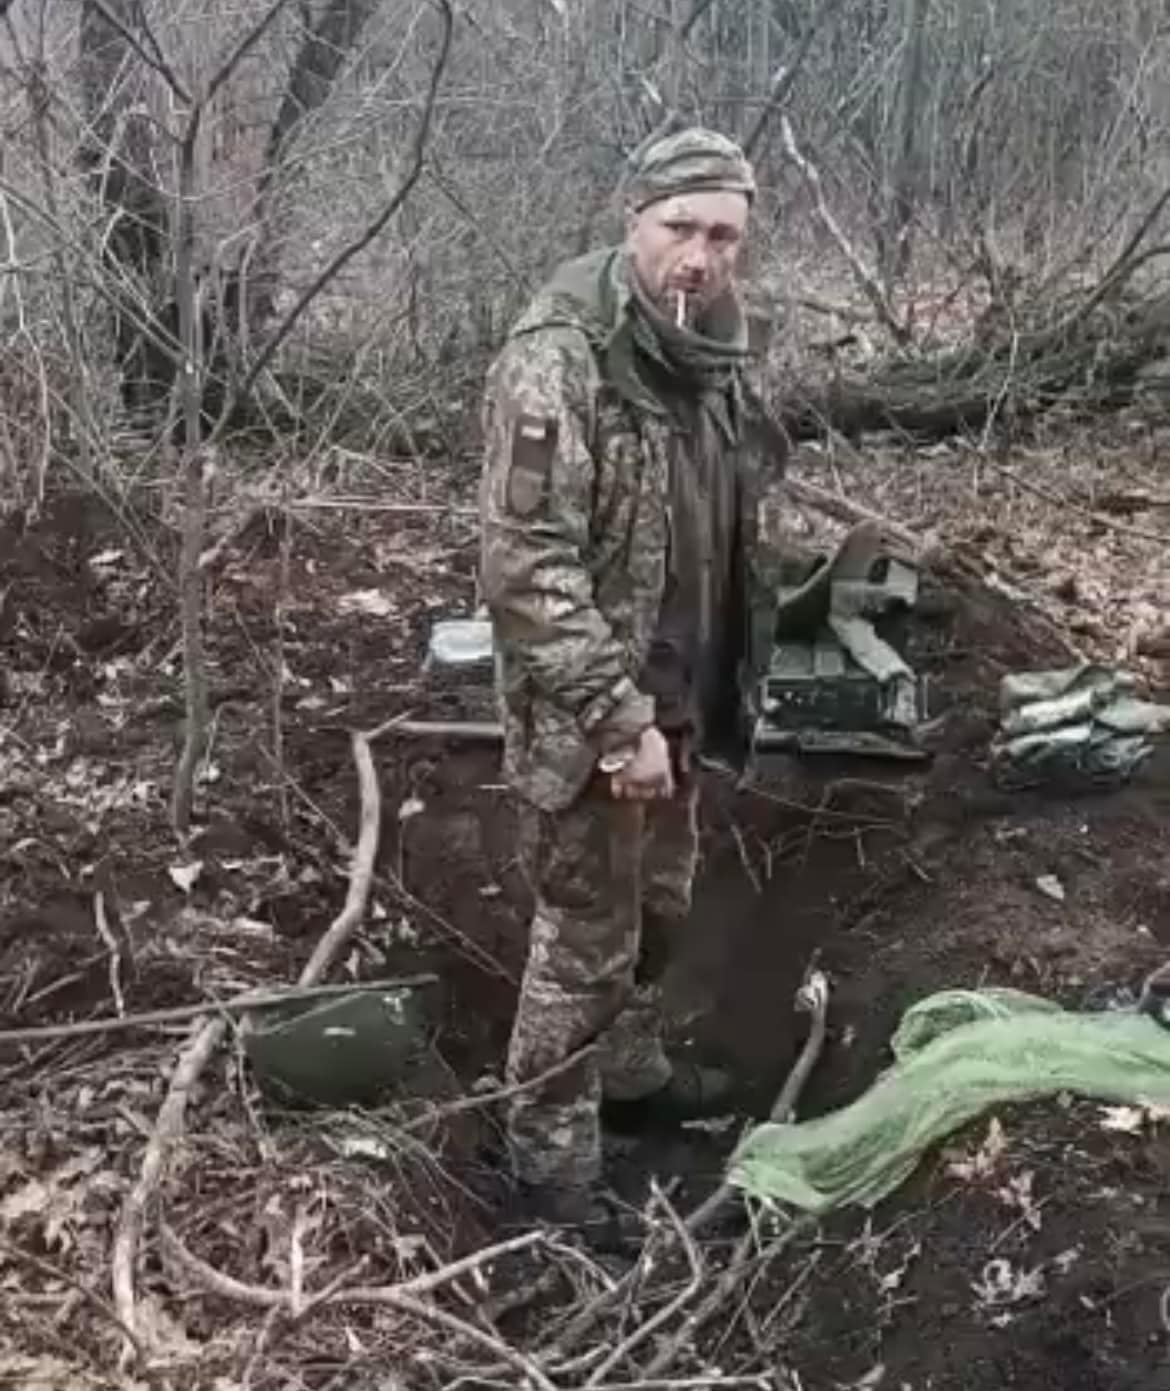 Герою слава! На честь українського безстрашного мученика-воїна запустили масштабний флешмоб